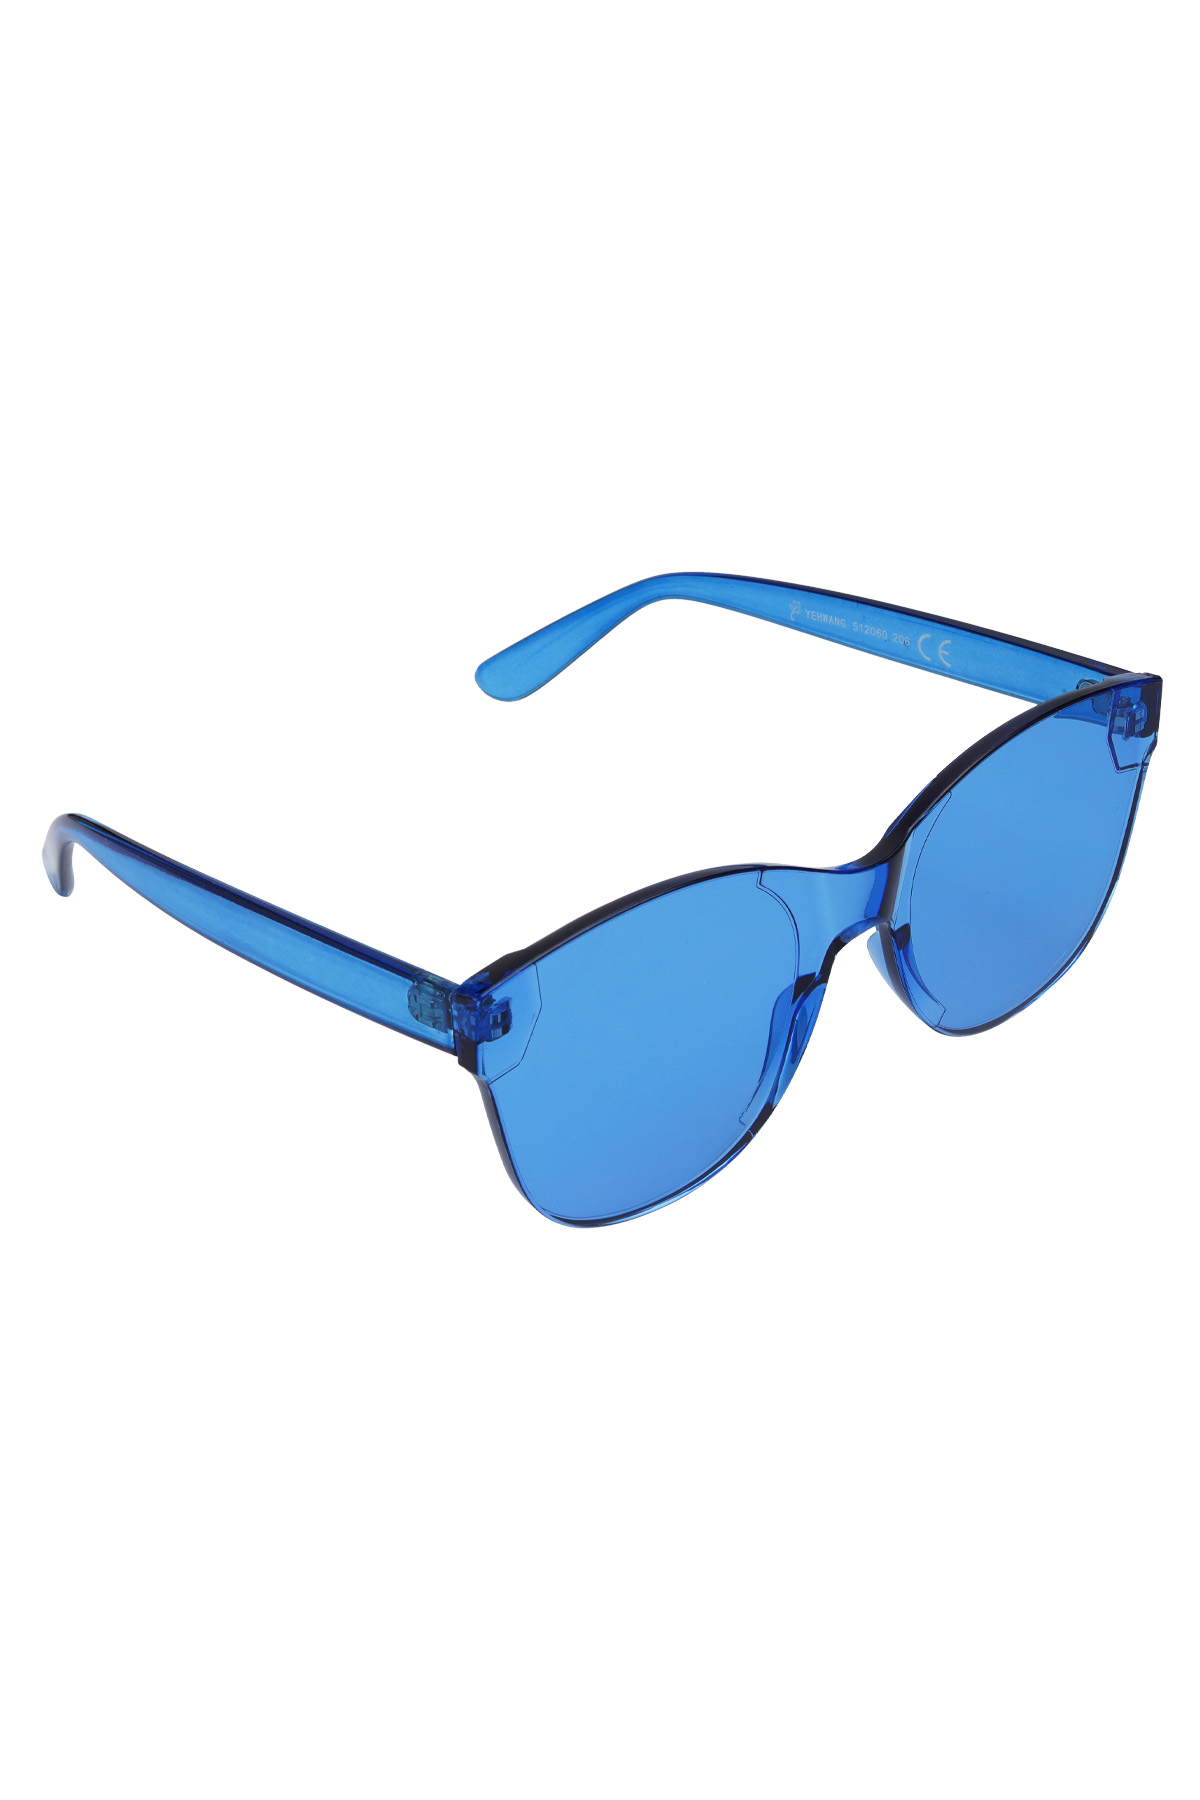 Tek renkli trend güneş gözlüğü - mavi h5 